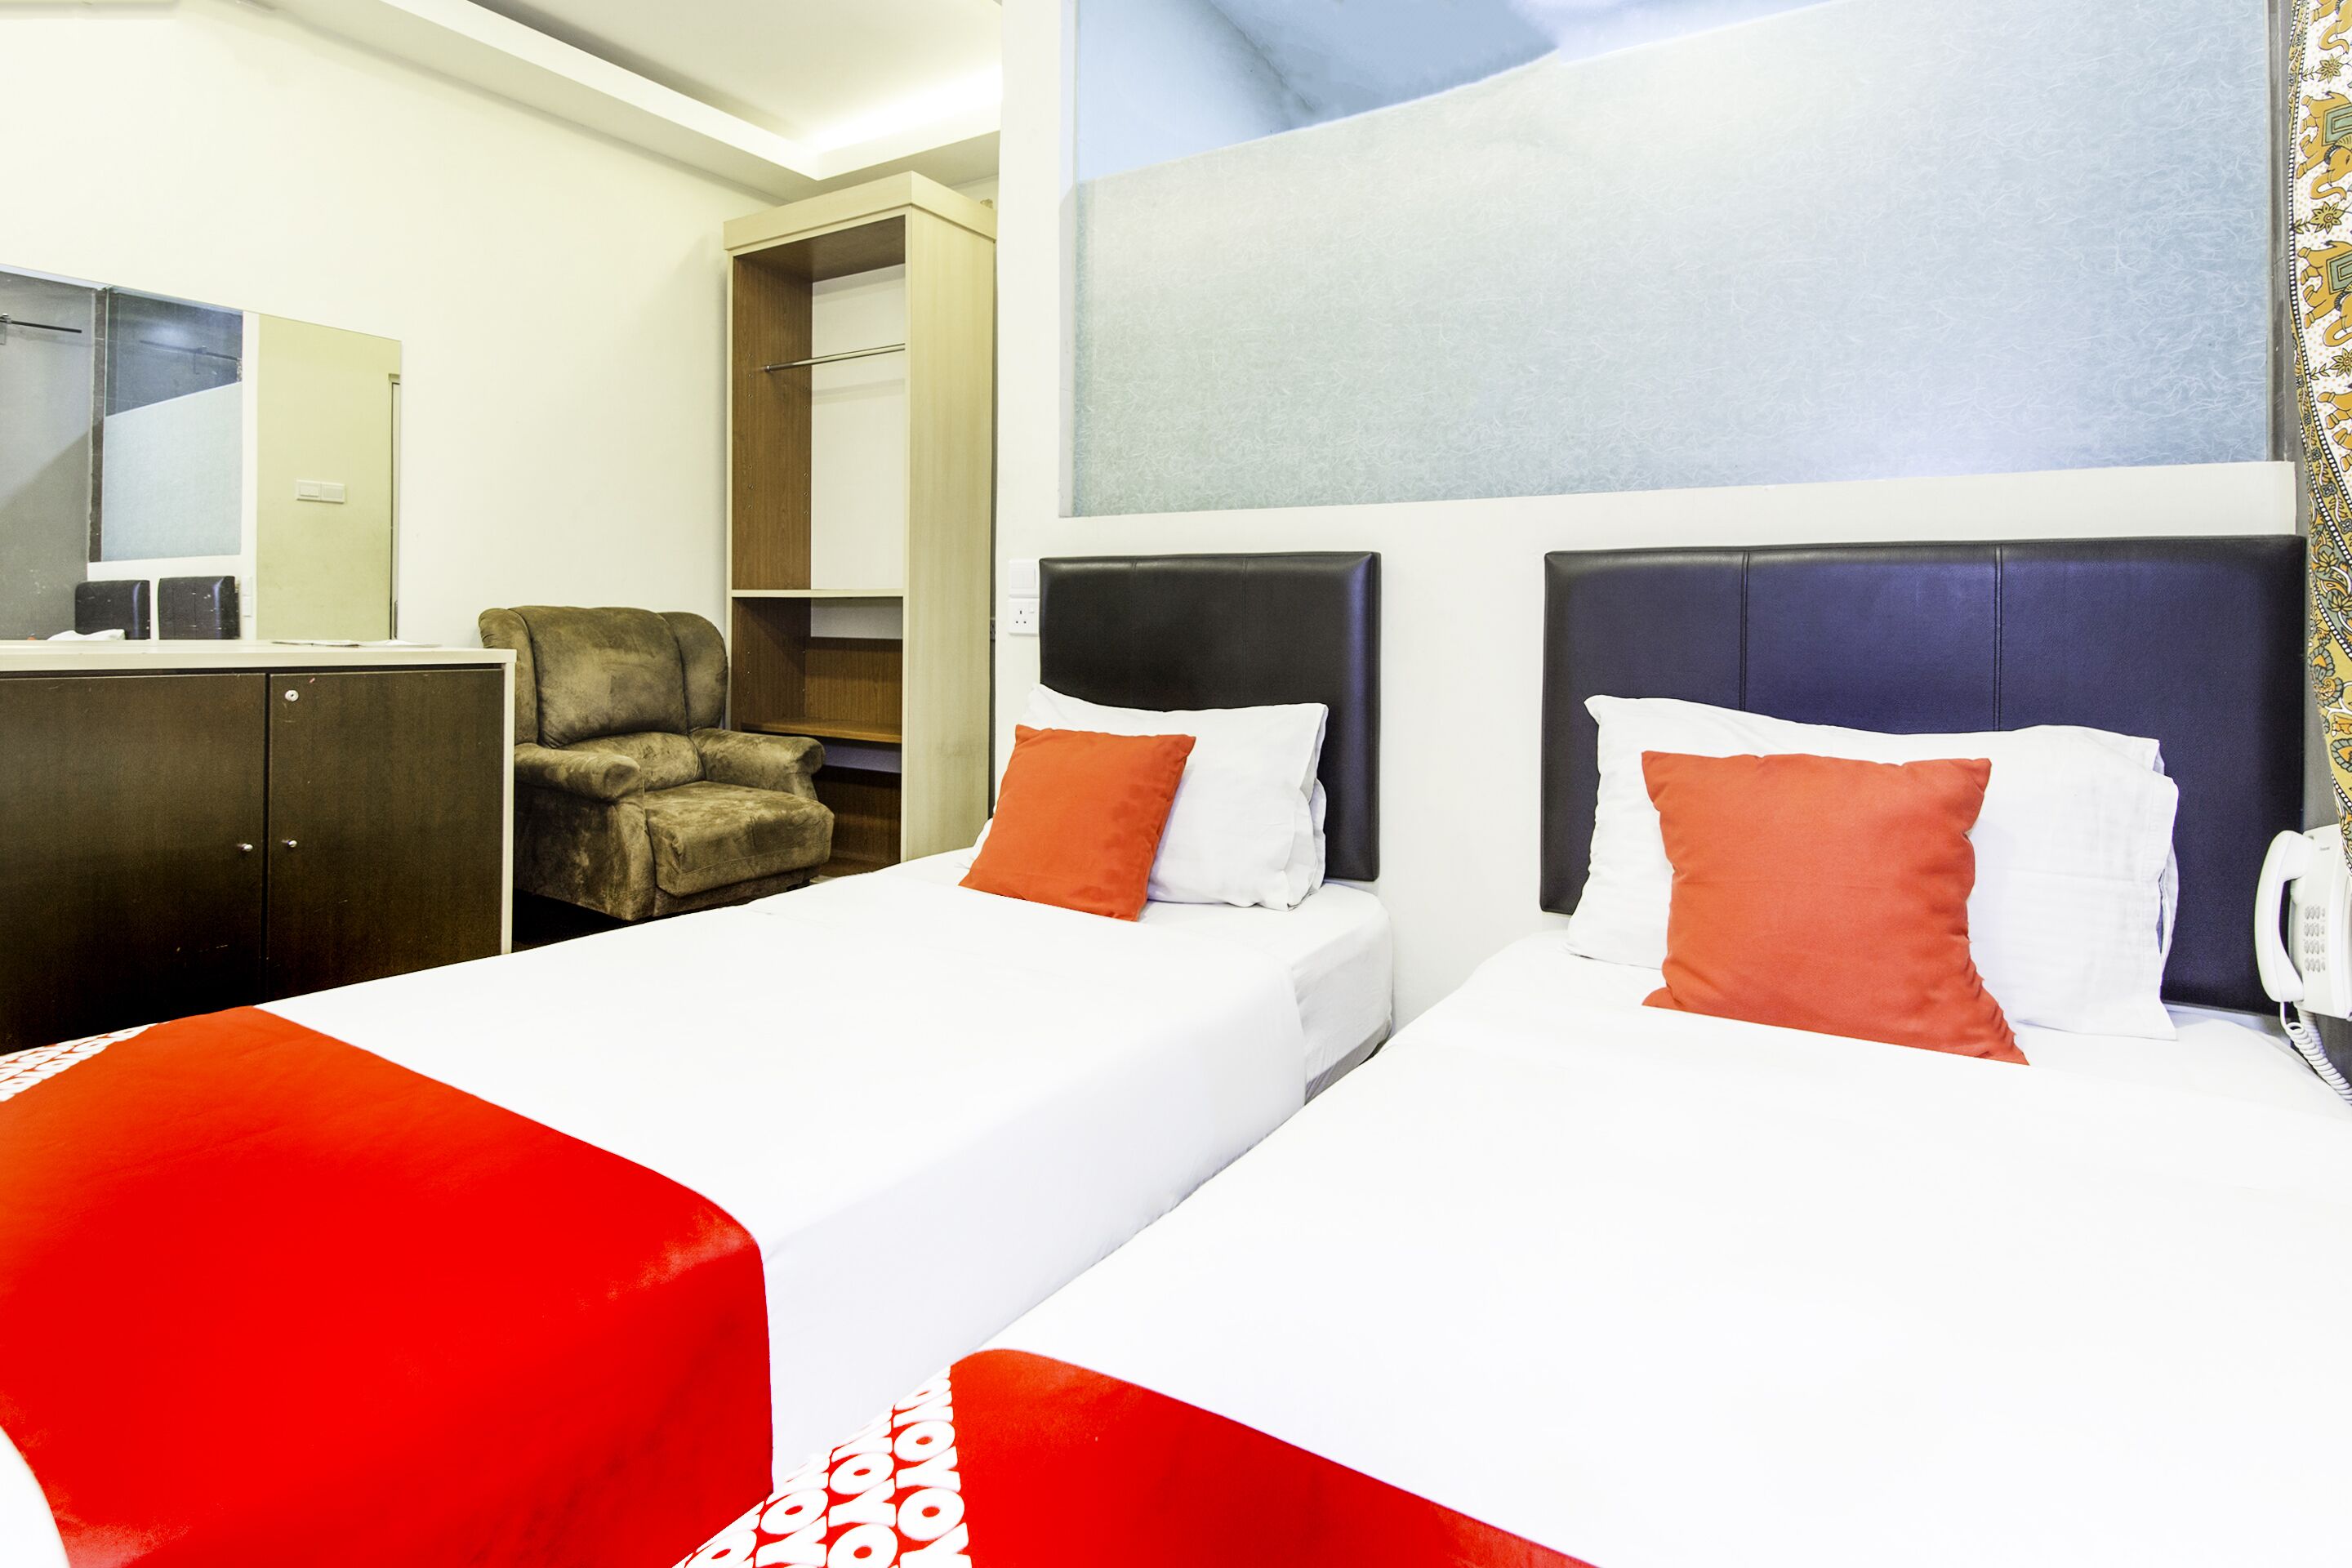 Hotel Narasindo by Oyo Rooms